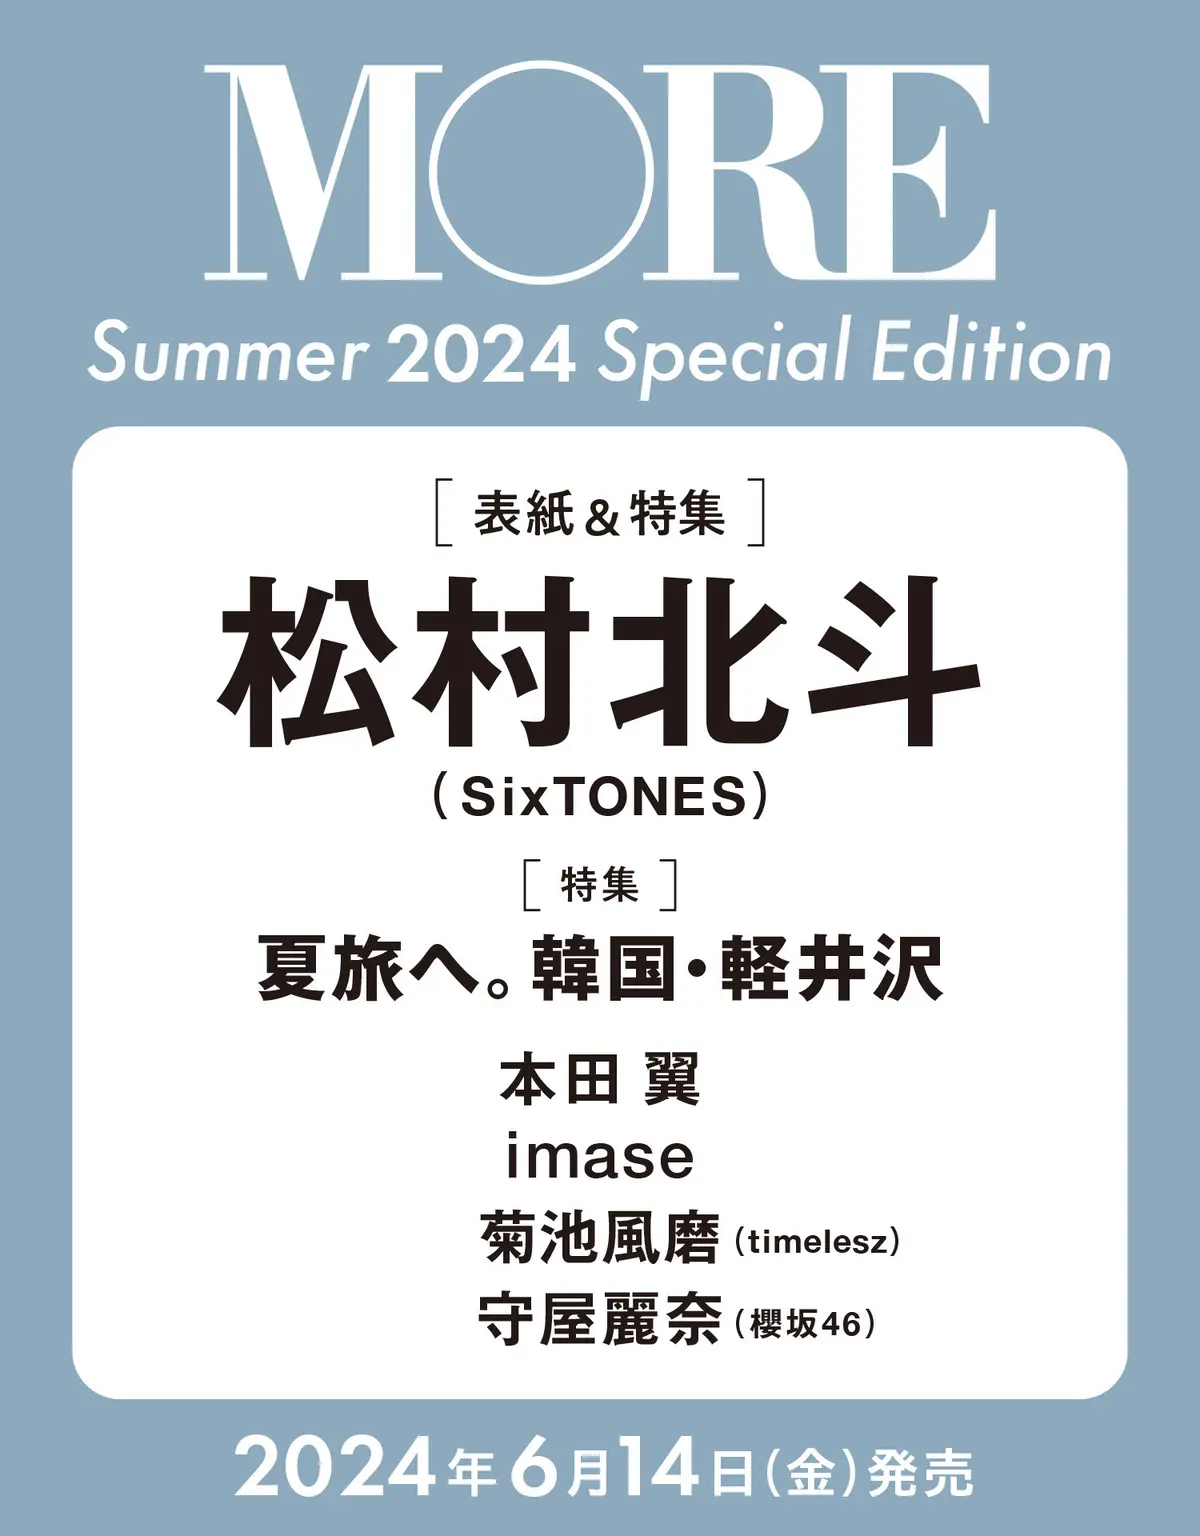 予約開始！】速報!! MORE Summer 2024スペシャルエディション版は松村北斗（SixTONES）が表紙！（６月14日発売） | MORE